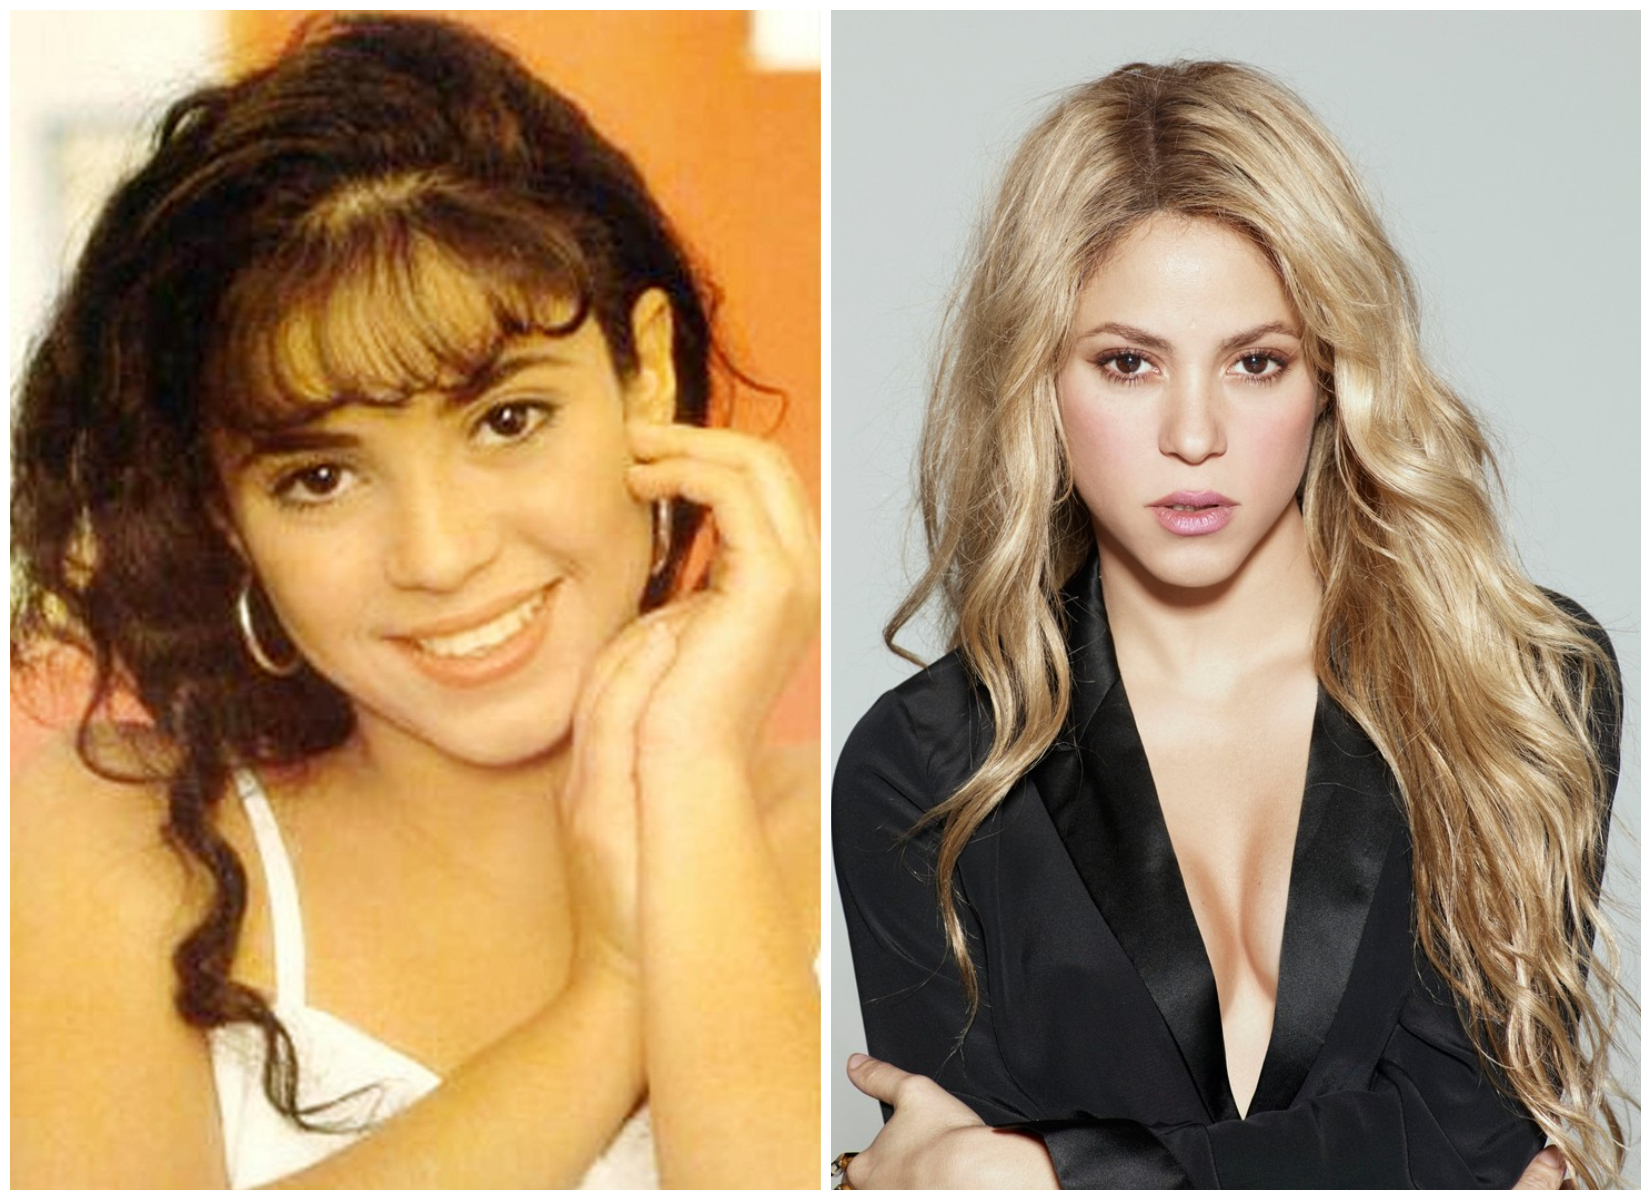 Imagini de colecție. Știai că Shakira a jucat în telenovele? Cum arăta la 16 ani și ce rol a avut